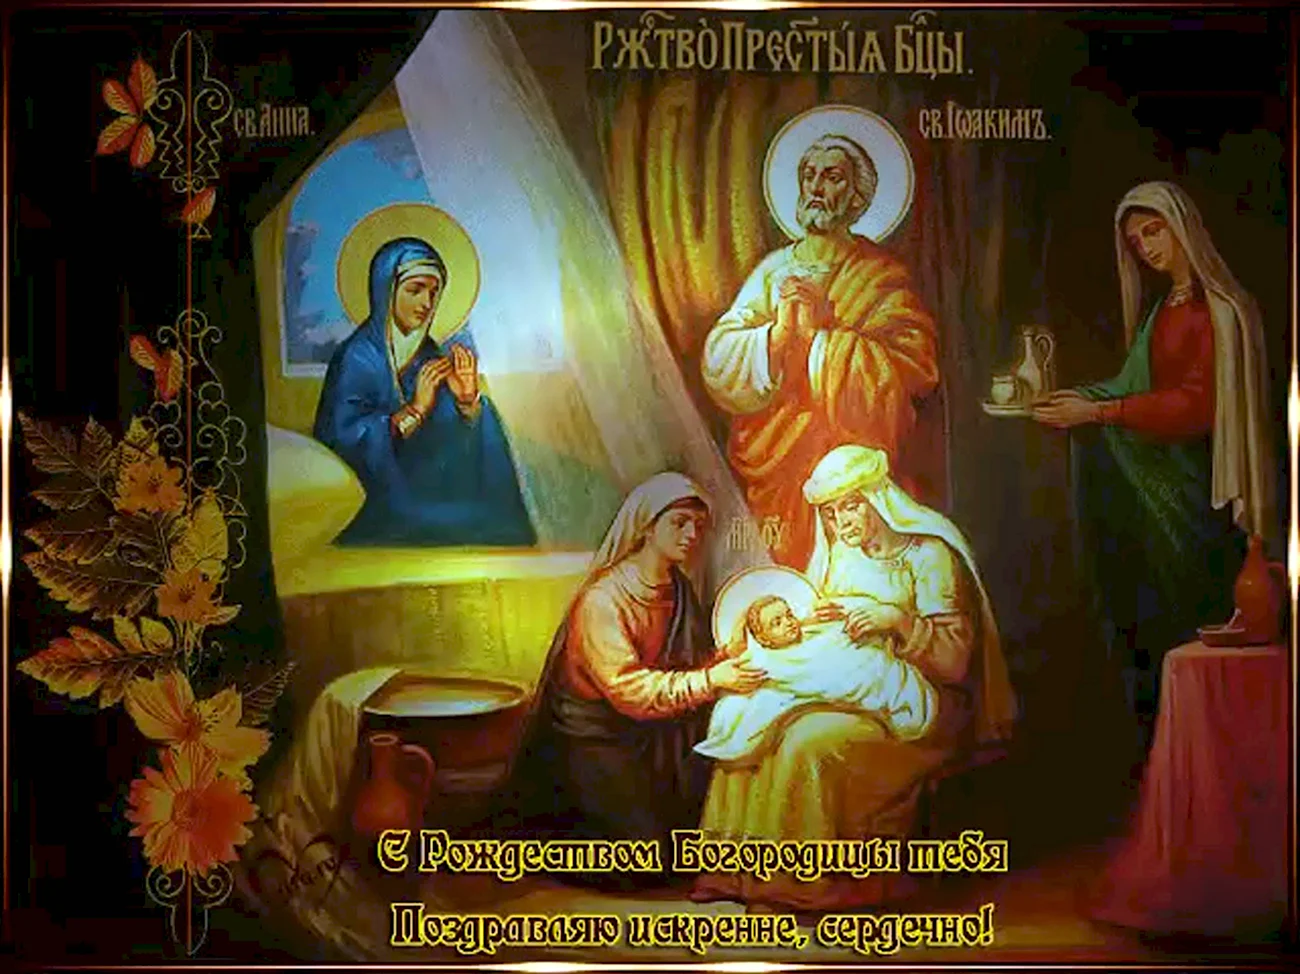 Рождество Пресвятой Богородицы православный праздник. Картинка